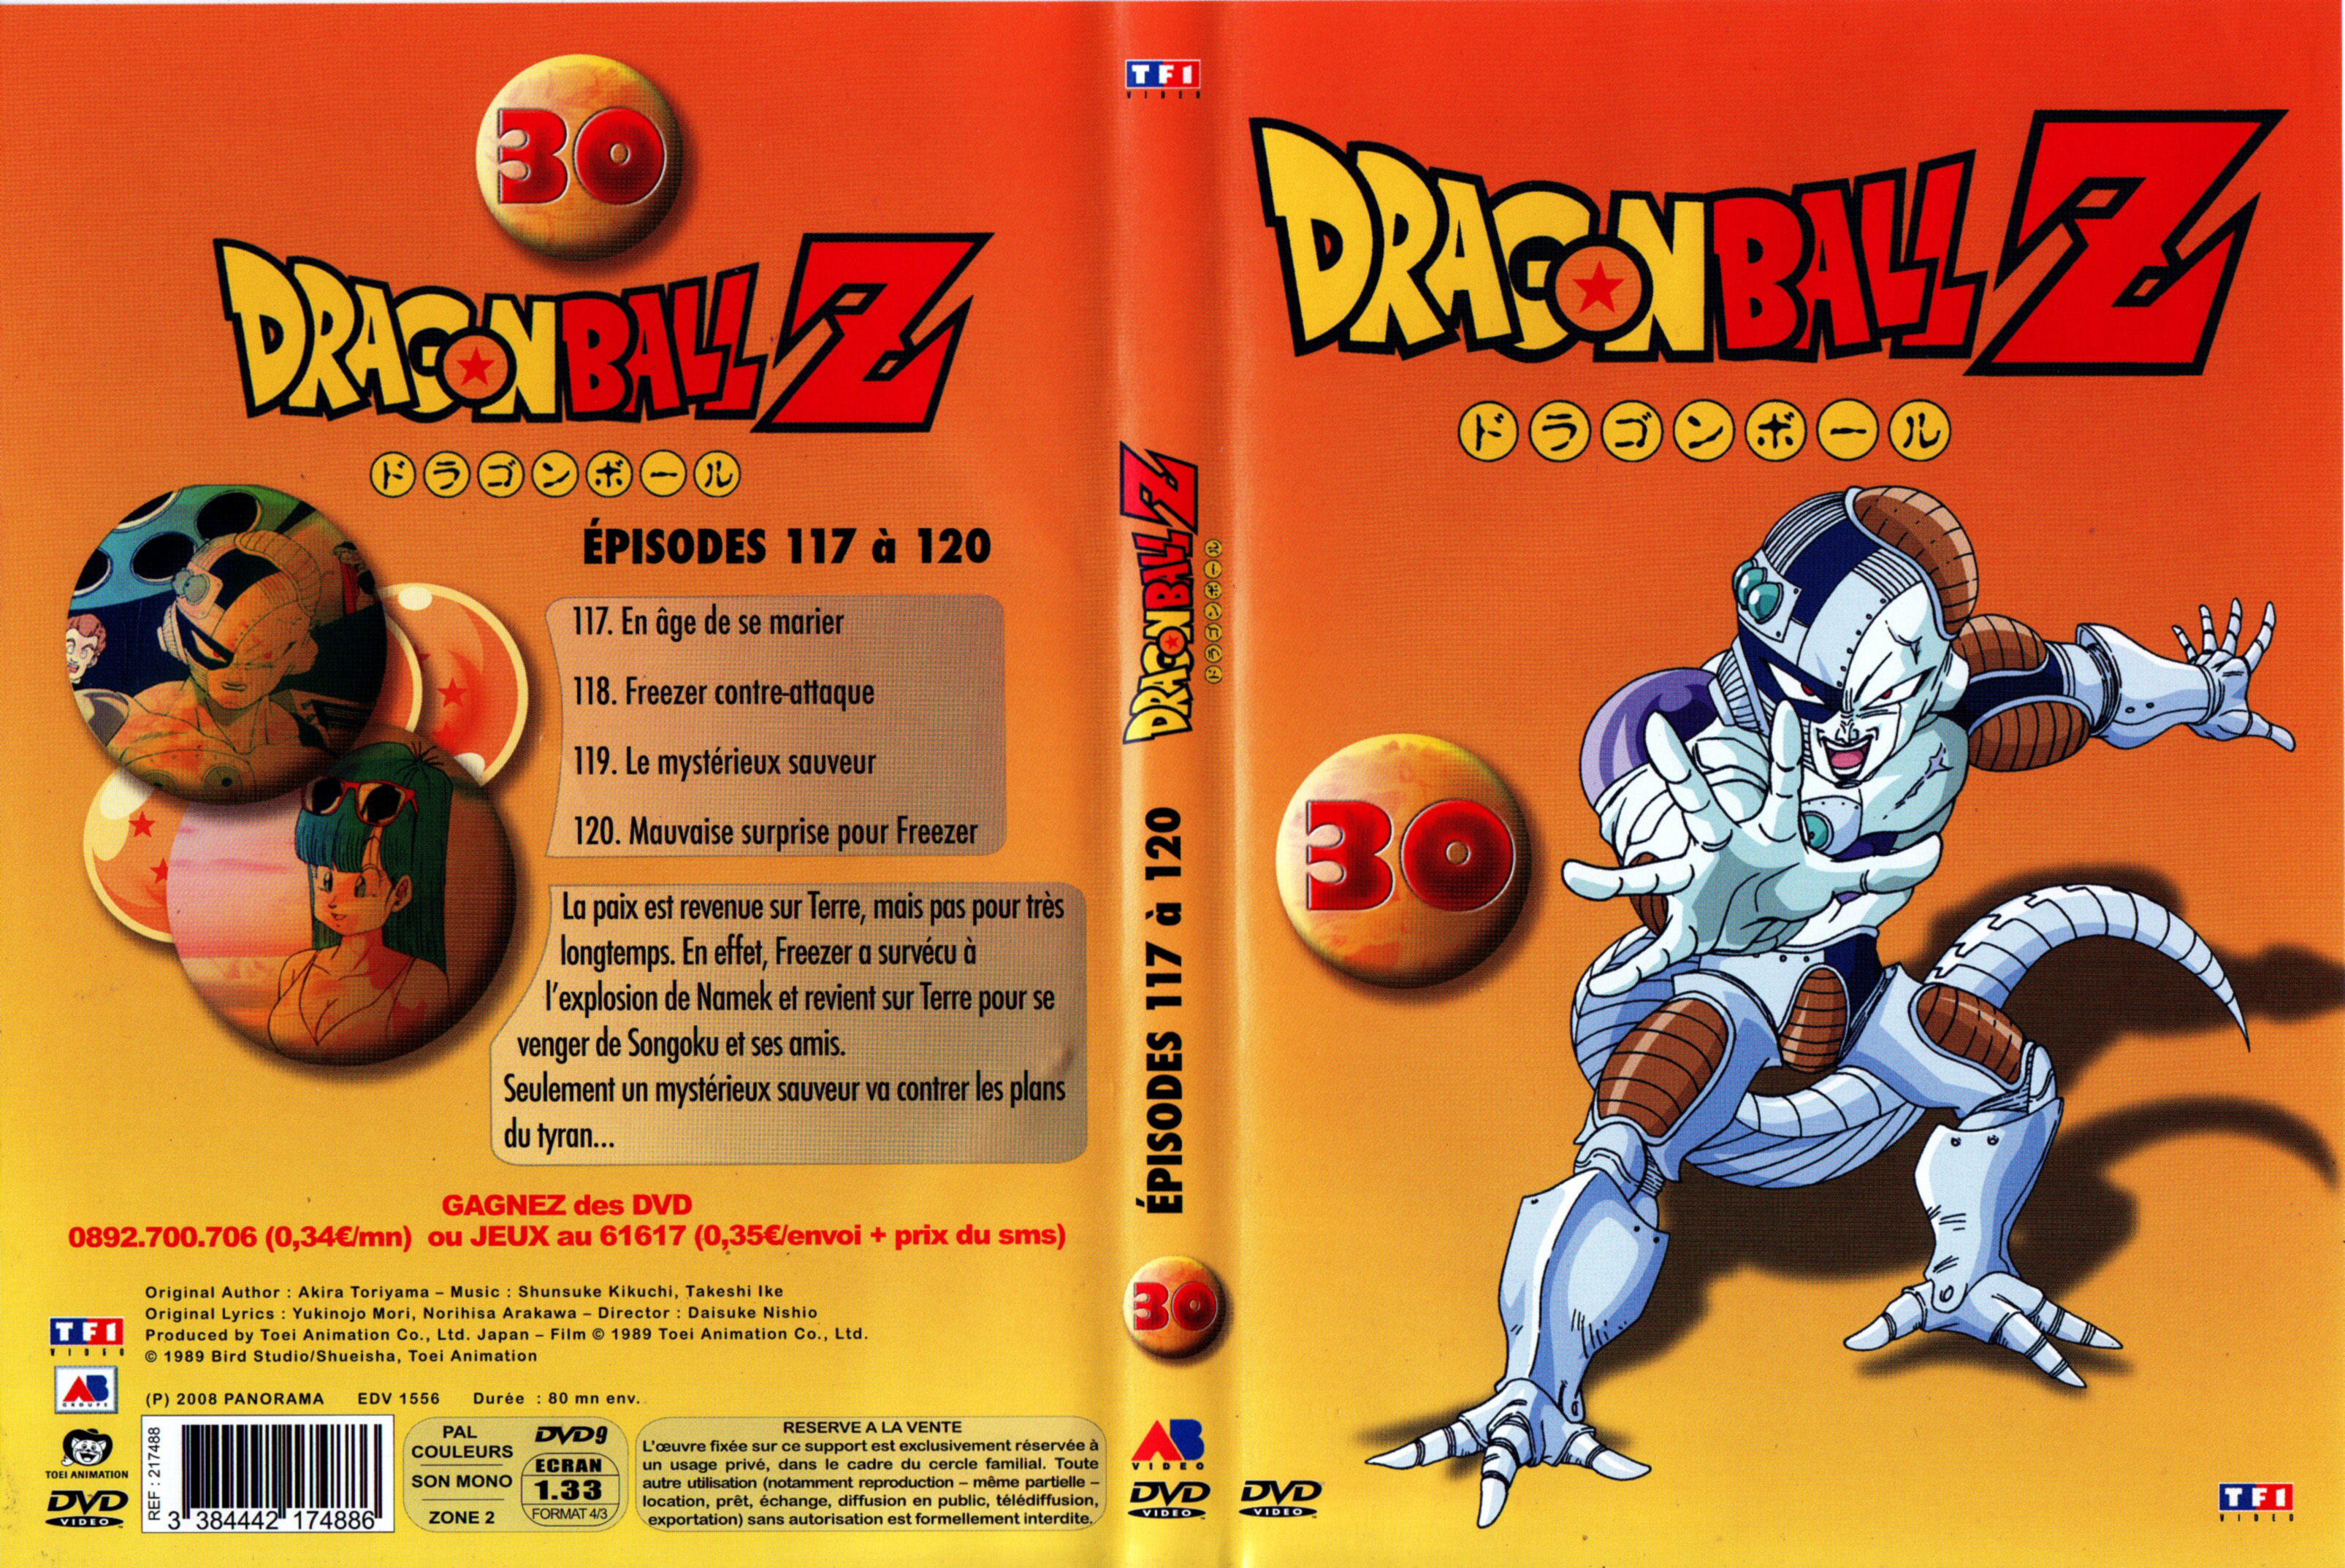 Jaquette DVD Dragon Ball Z vol 30 v3